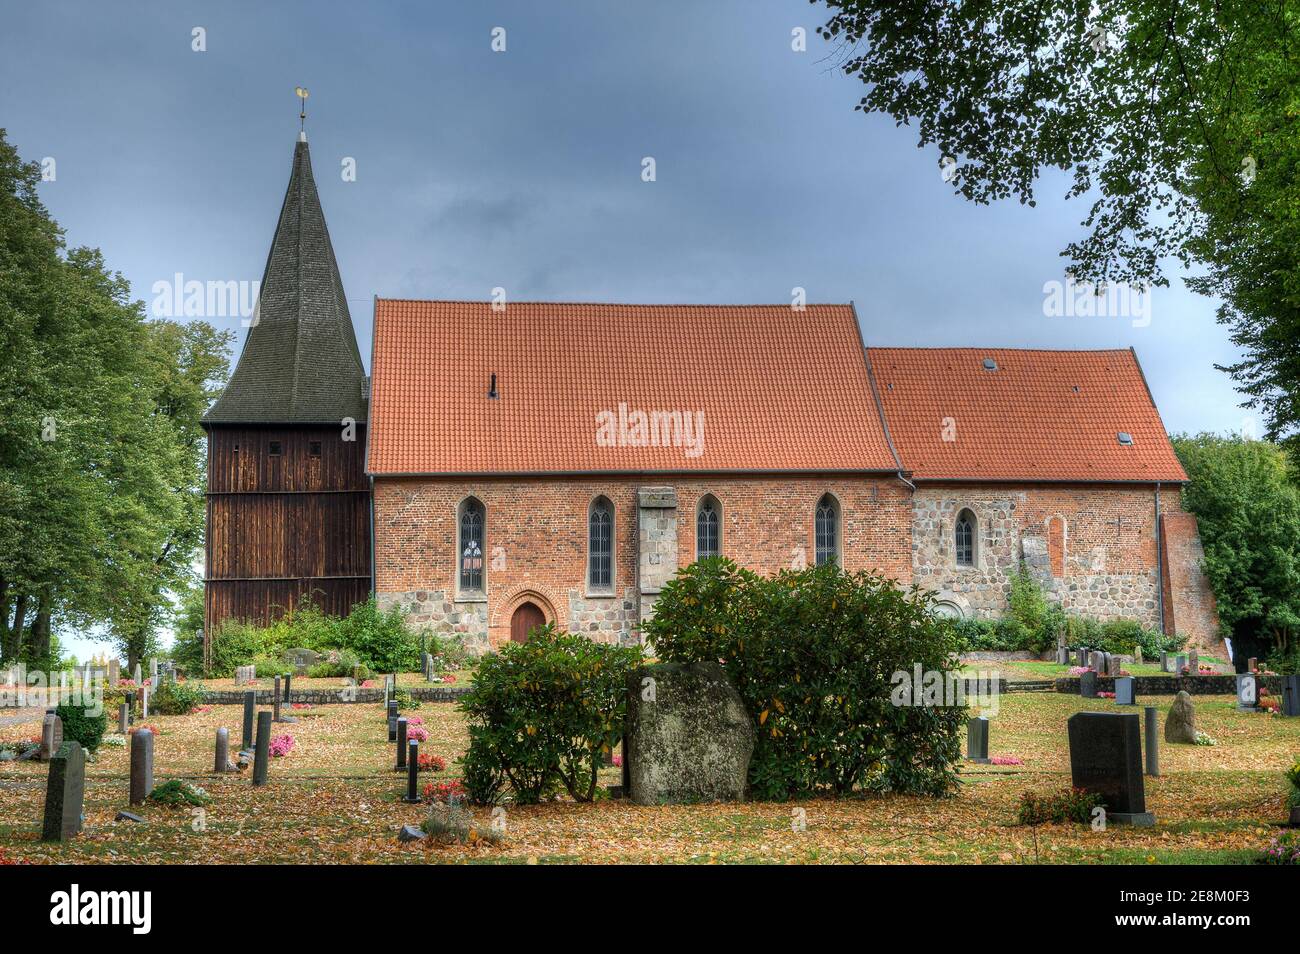 La iglesia Mustin es una de las iglesias más antiguas de la región de Launeburg. Foto de stock